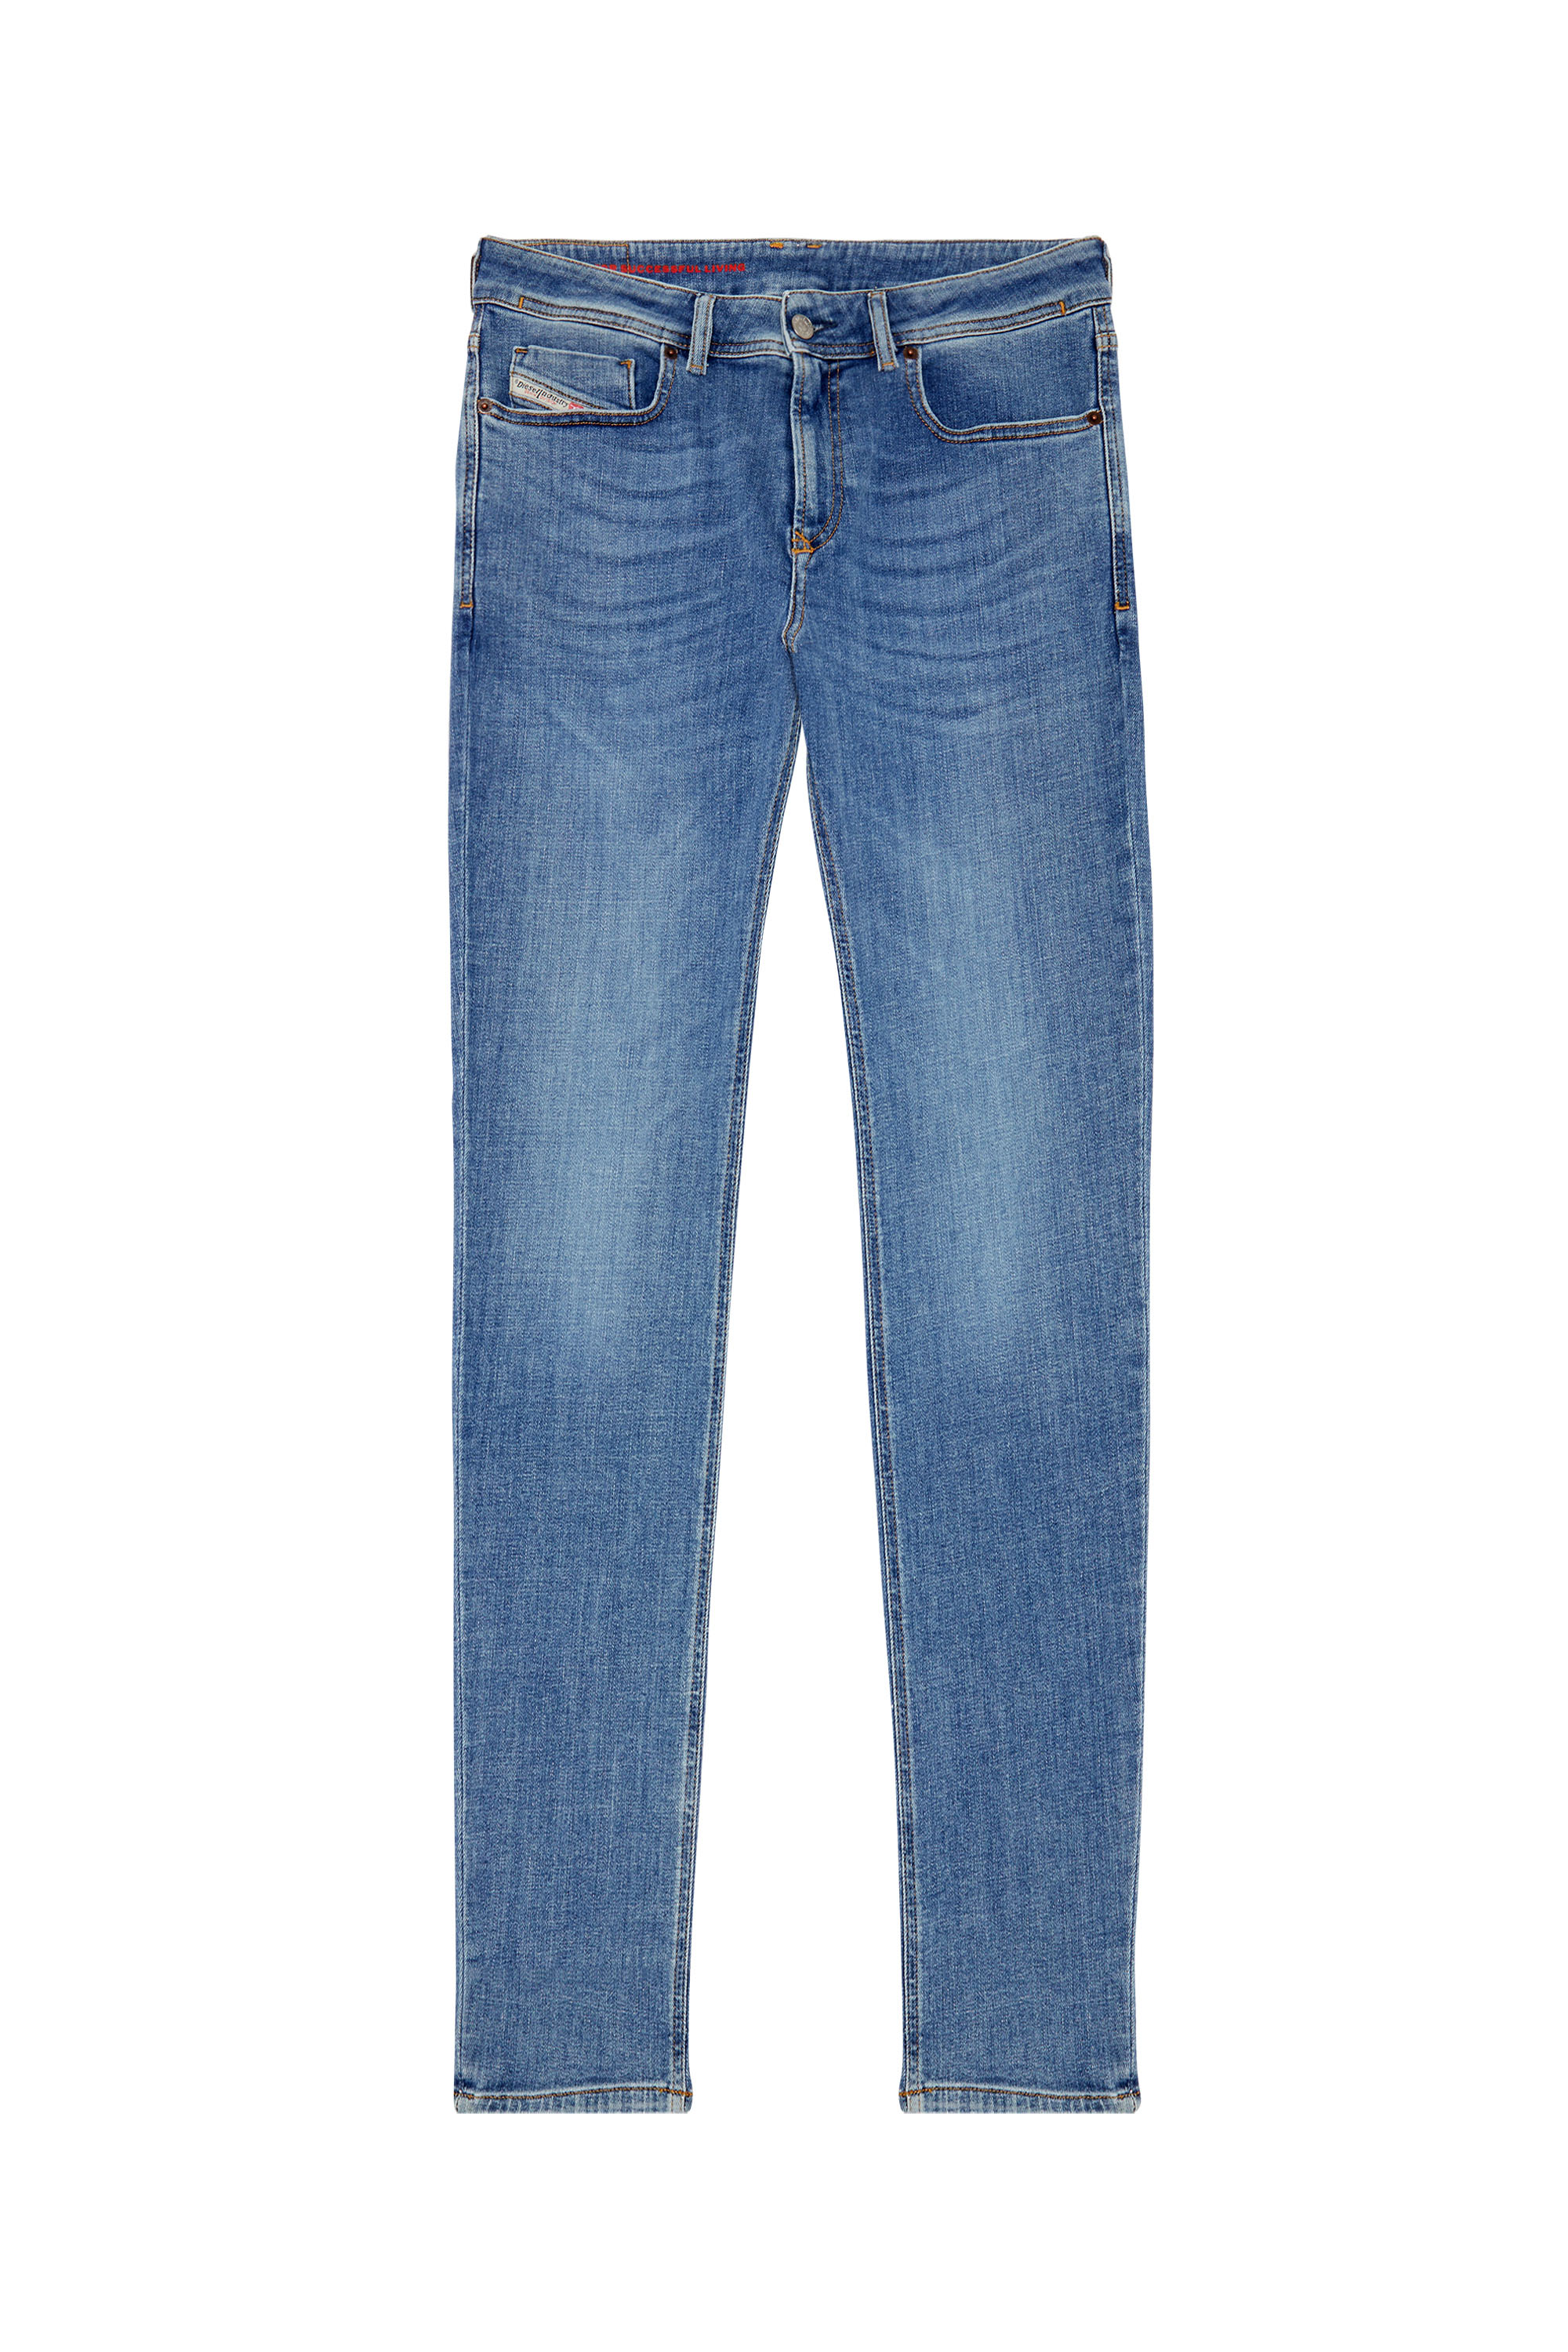 Diesel - Skinny Jeans 1979 Sleenker 09C01, Medium blue - Image 3